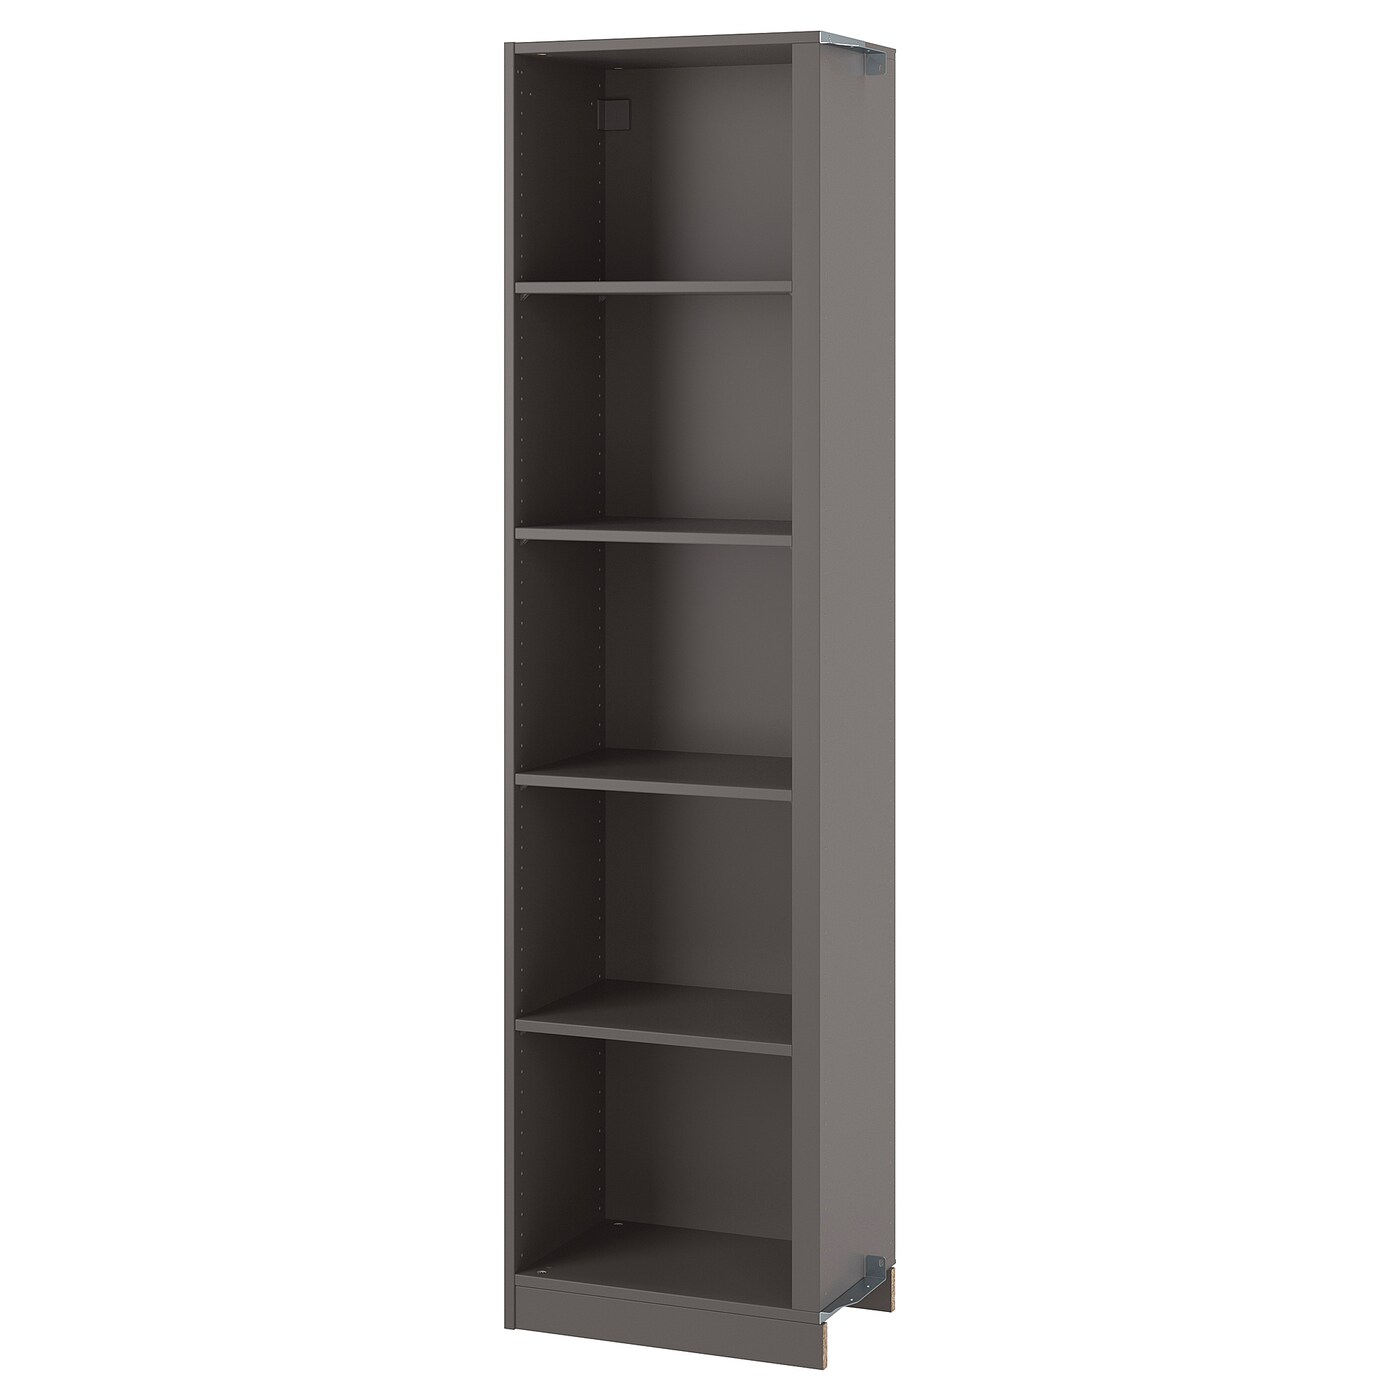 Дополнительный угловой модуль д/гардероба/4 полки - IKEA PAX, черно-коричневый, 53x35x236, ПАКС ИКЕА